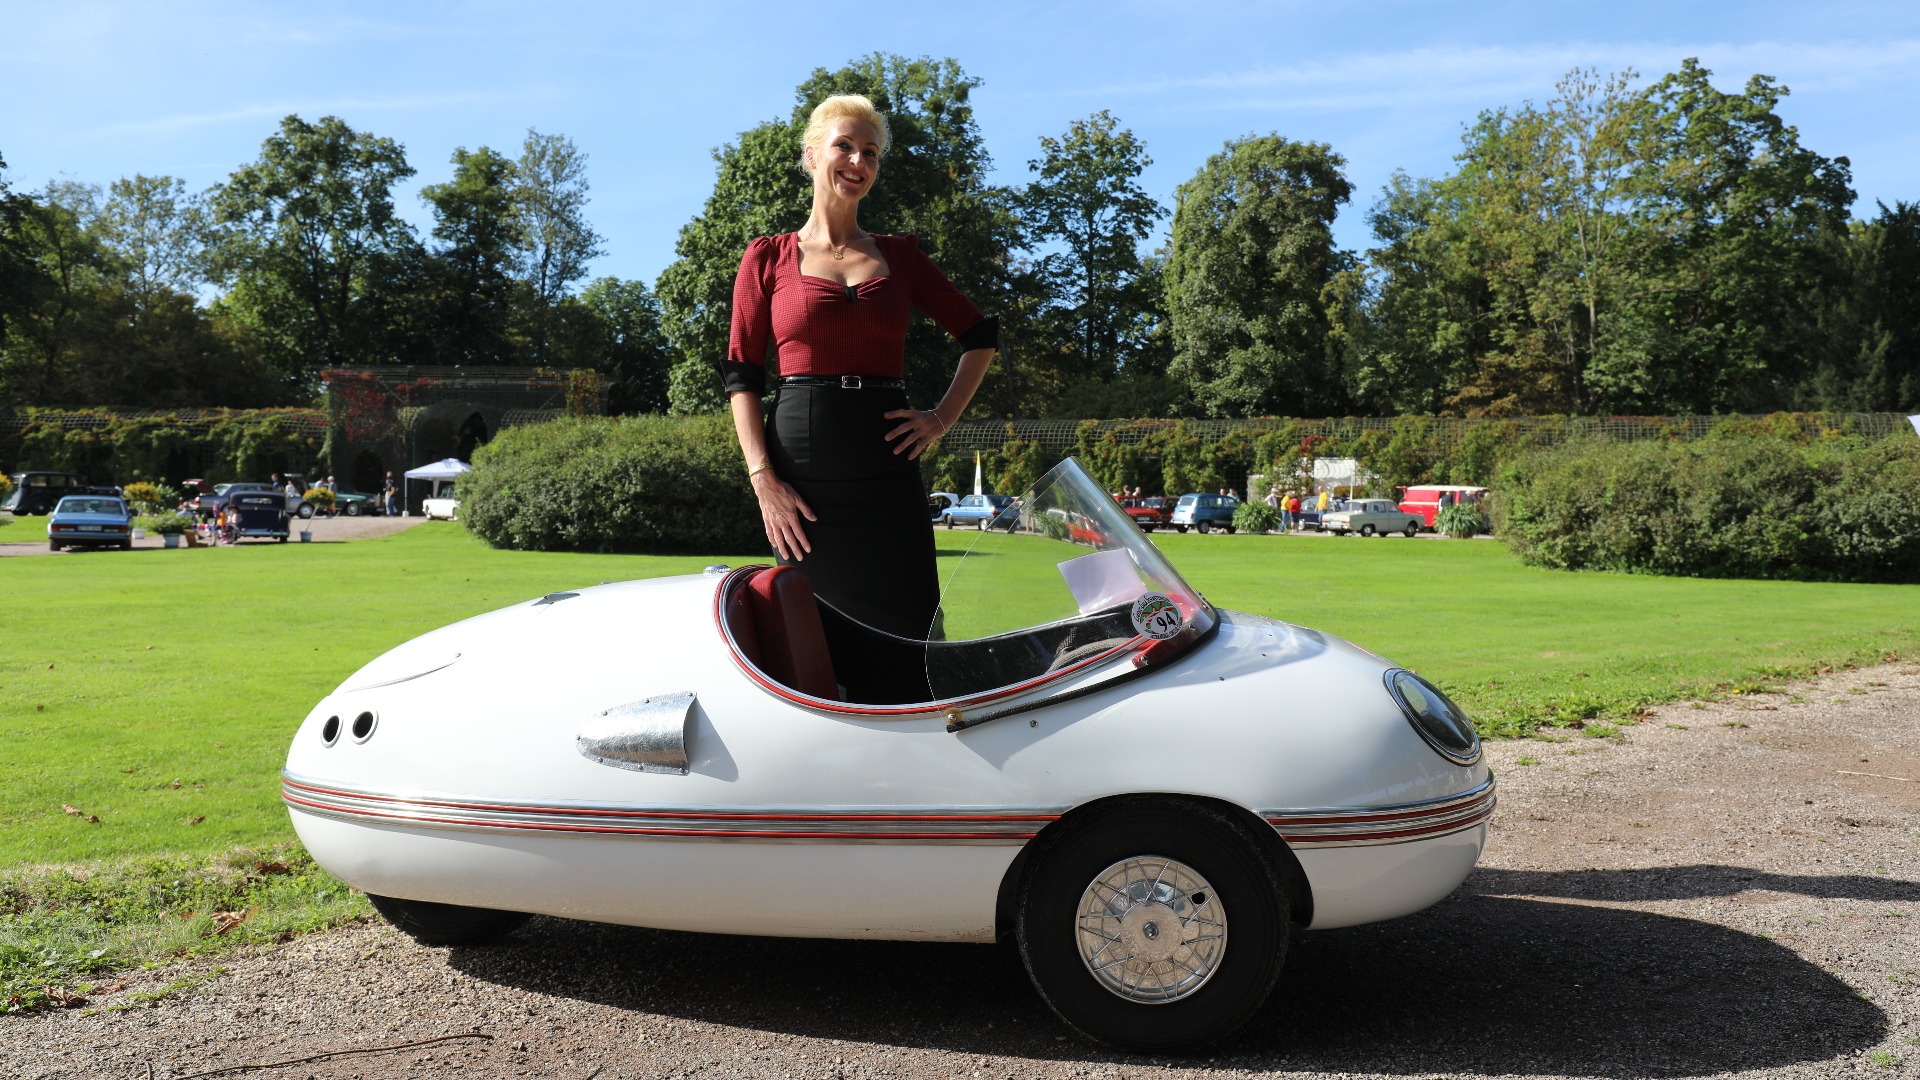 Brütsch Zwerg er en supersjelden mikrobil, her viser Andrea hvor liten bilen faktisk er.